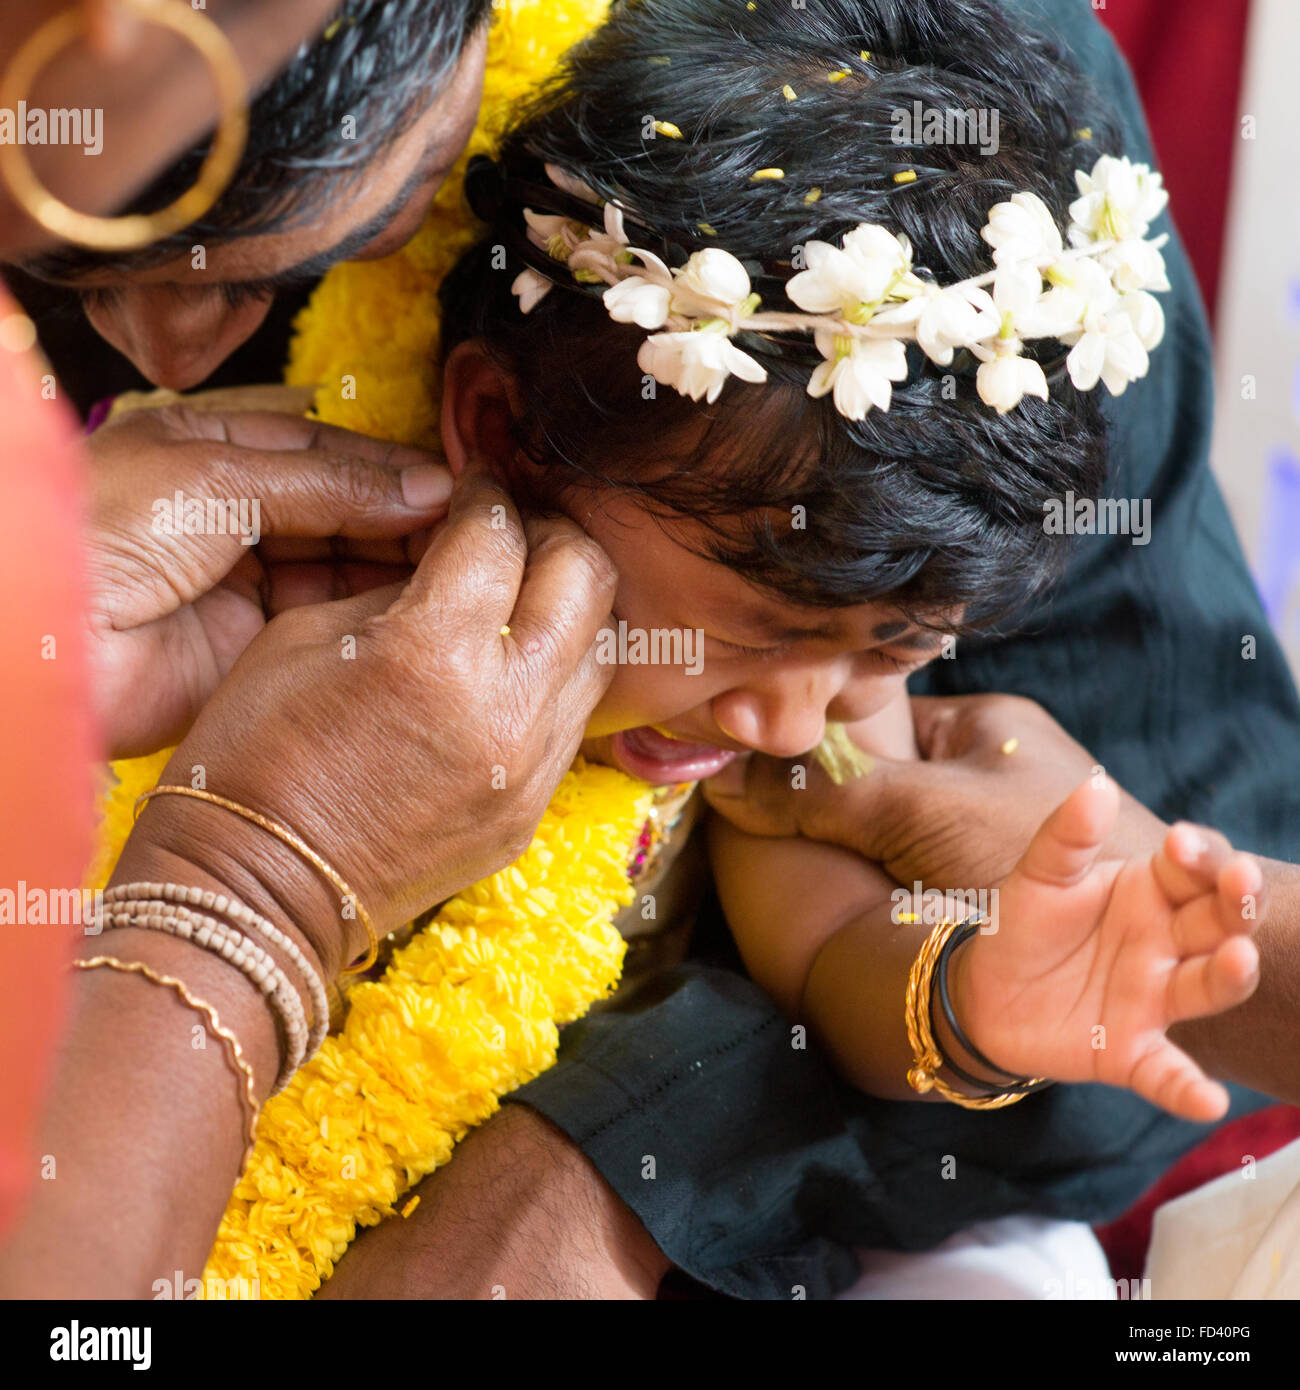 Babymädchen weint während der Karnavedha-Ereignisse. Traditionelle indische Hindus Ohrlochstechen Zeremonie. Indien spezielle Rituale. Stockfoto